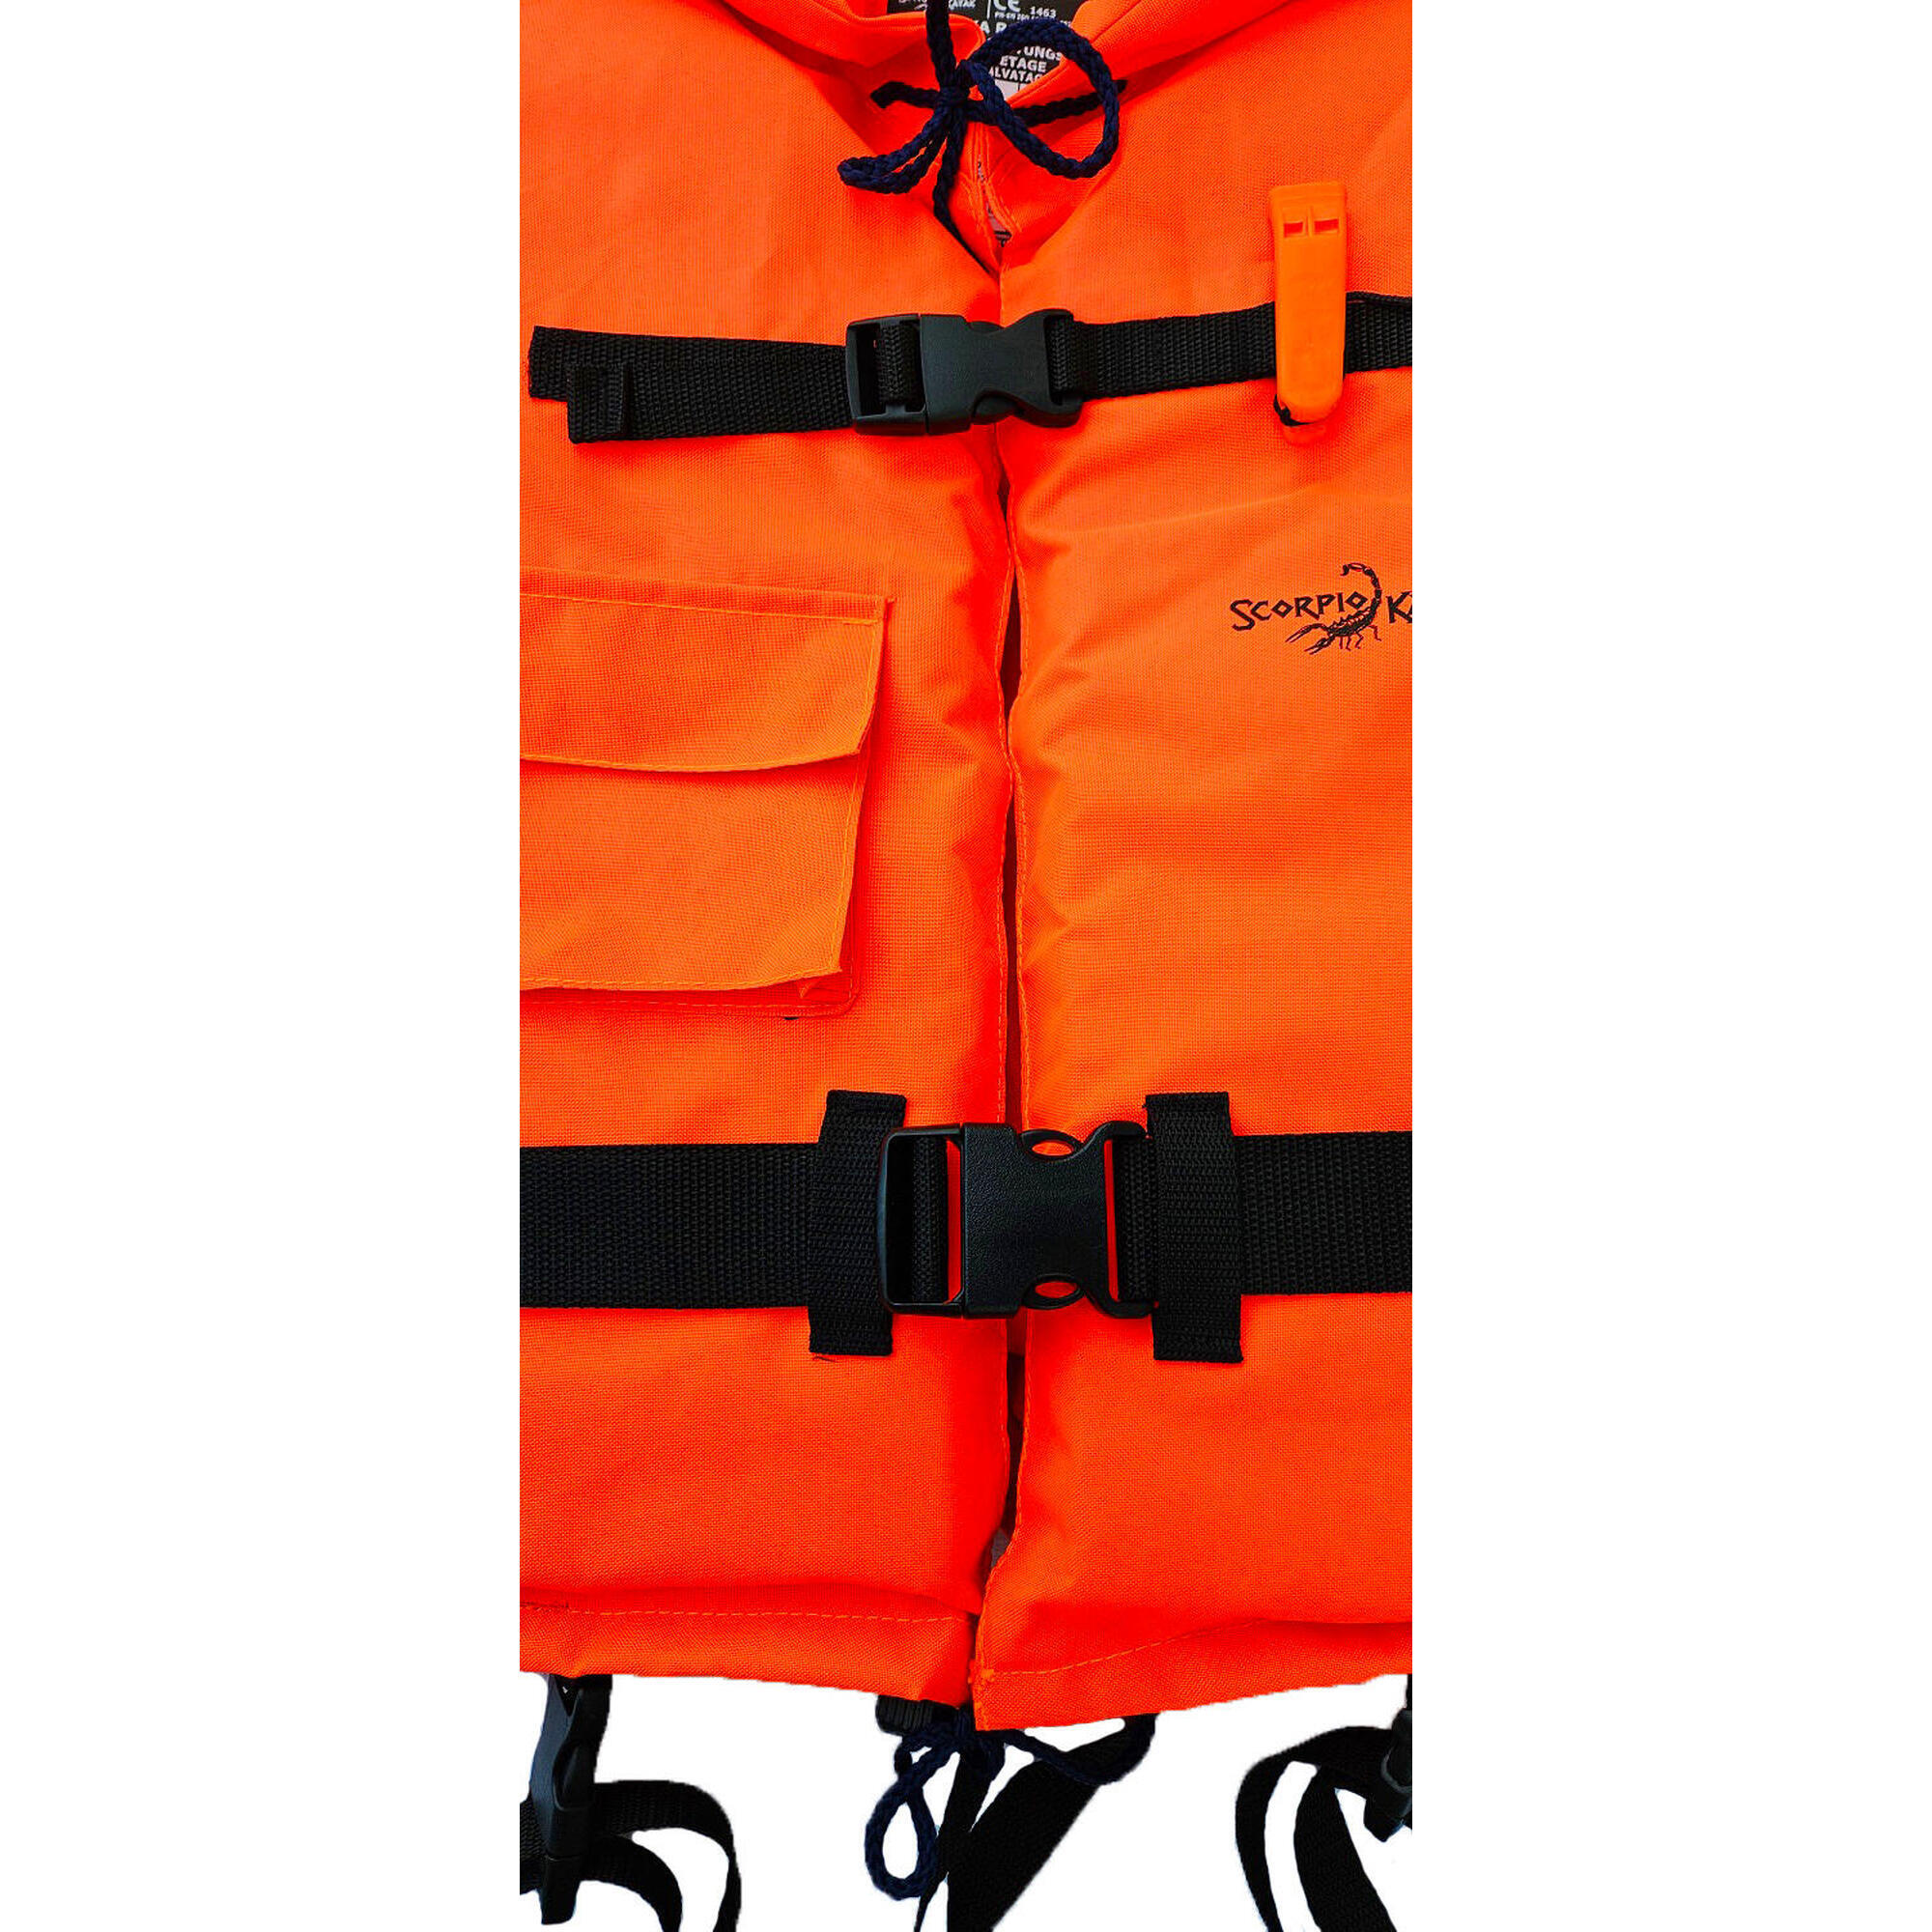 Kamizelka ratunkowa na spływ kajak łódź Unisex Scorpio kayak kapok